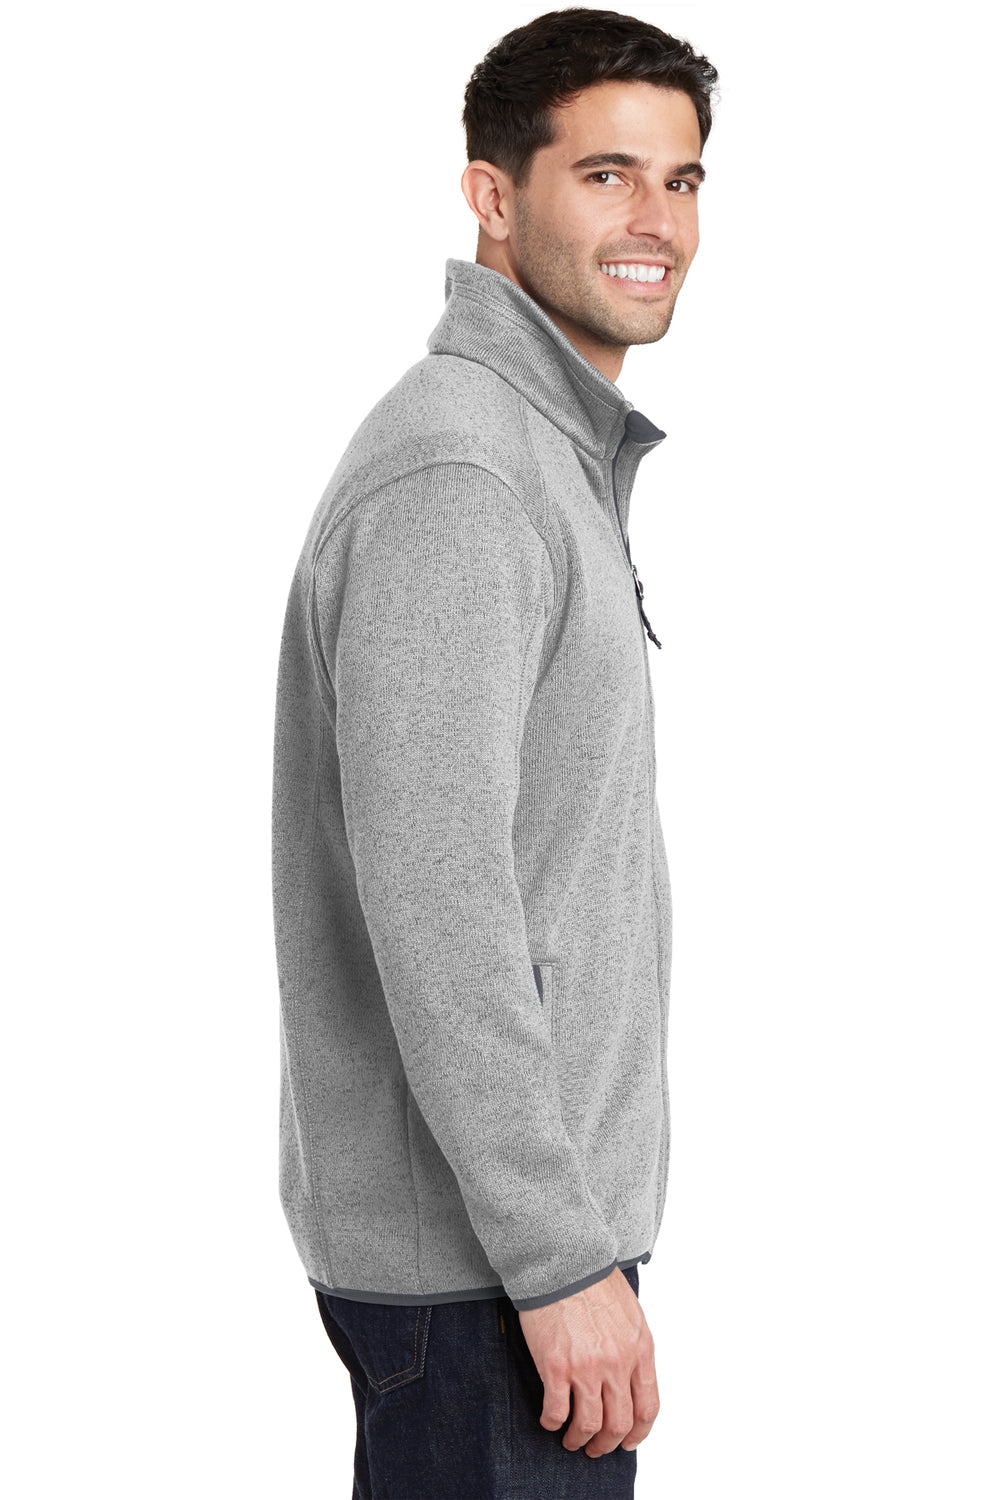 Port Authority F232 Mens Full Zip Sweater Fleece Jacket Heather Grey Side